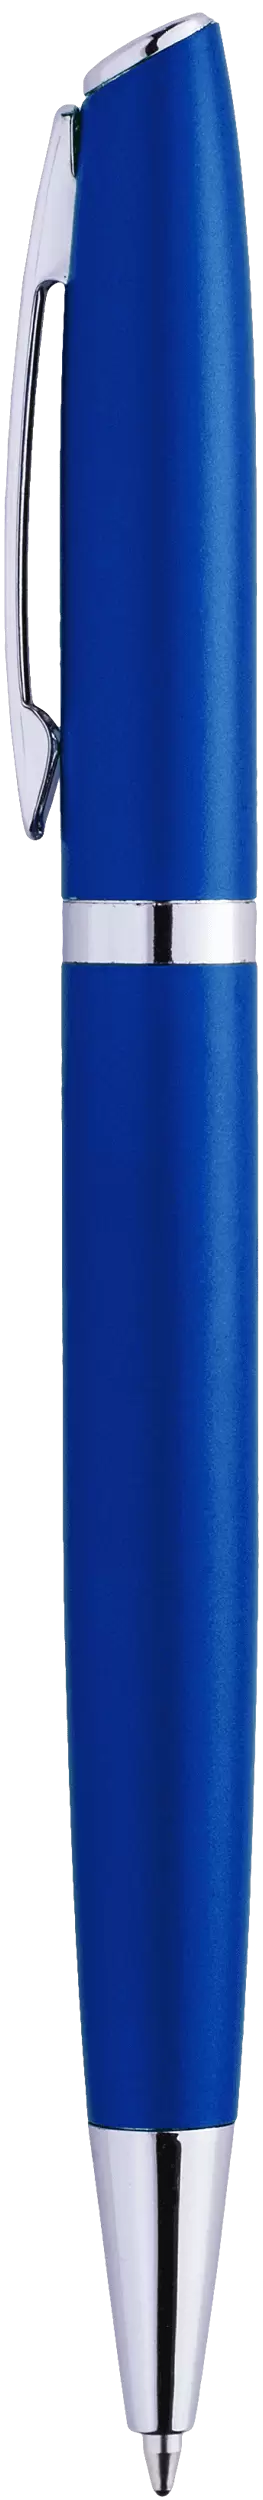 Ручка VESTA Синяя 1120-01